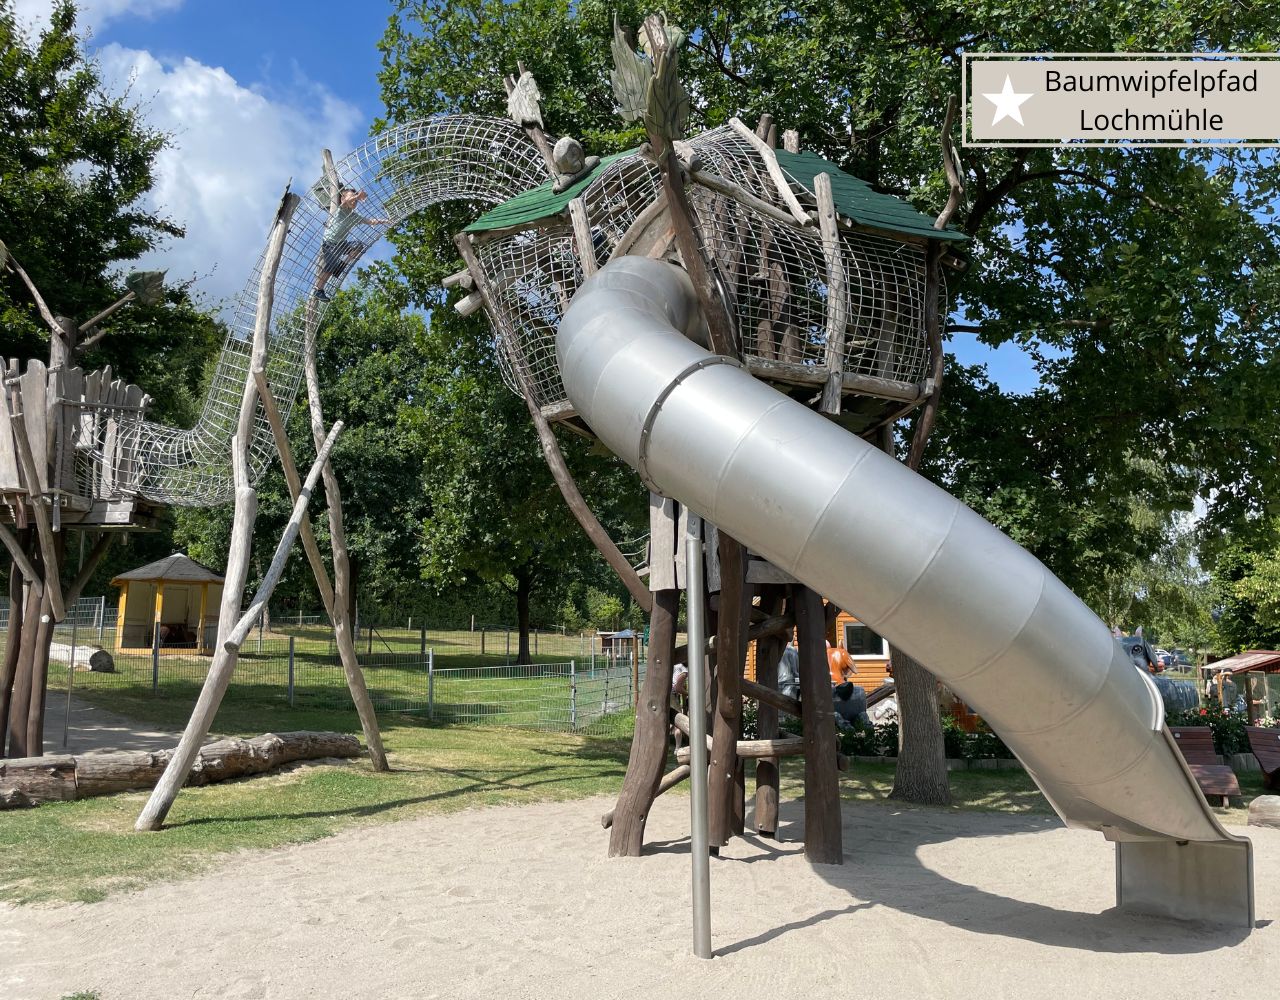 Freizeitpark Lochmühle - der Baumwipfelpfad eine Challenge für 4-Jährige